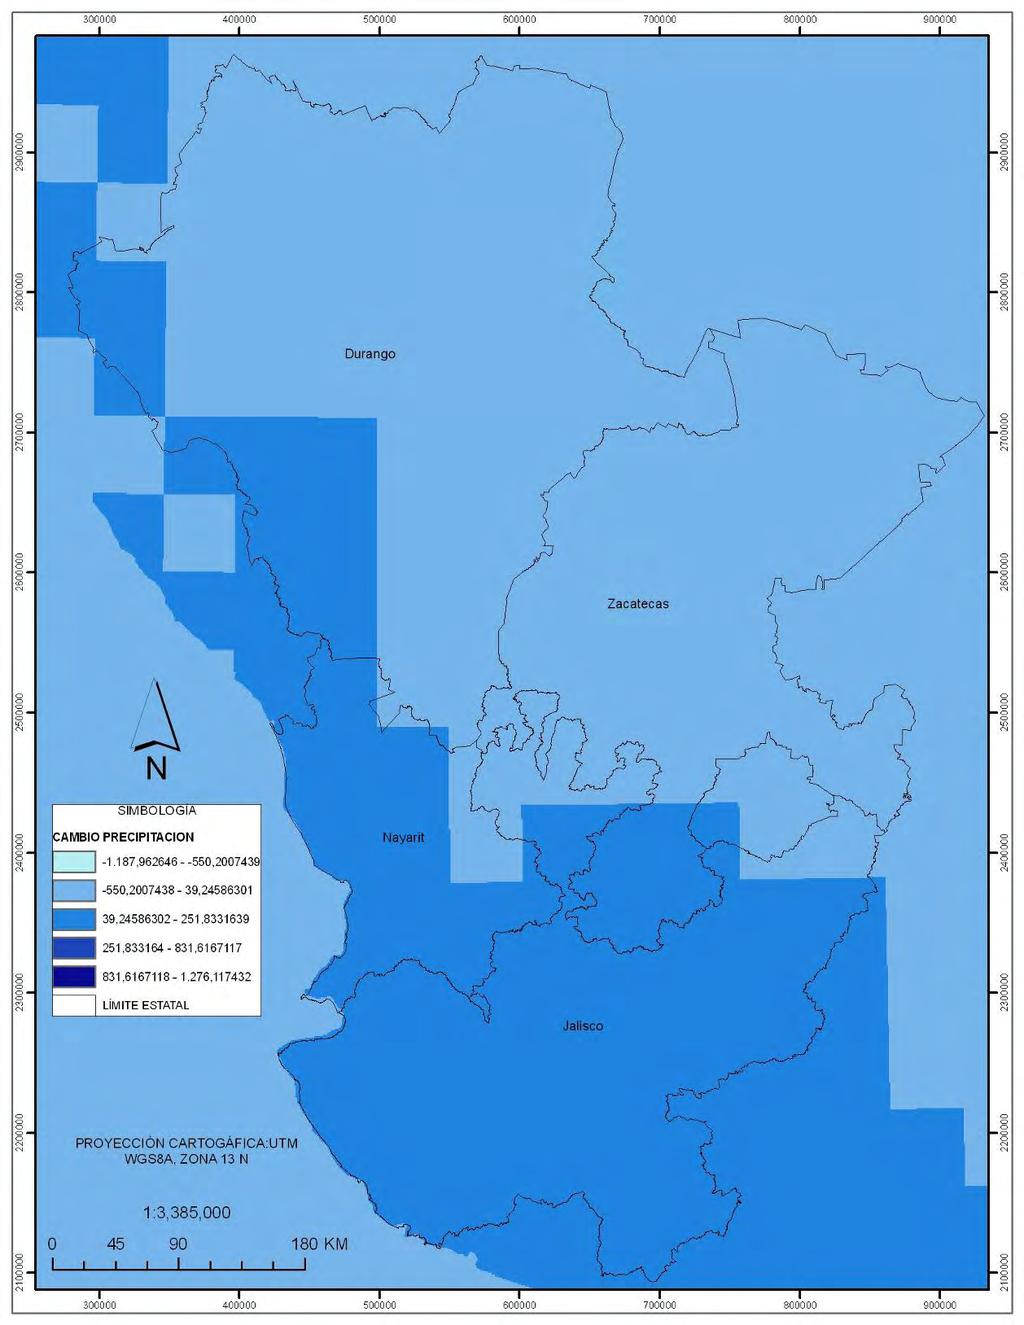 En cuanto a los cambios en la precipitación, según el modelo planteado por Durán (2010), la disminución de la misma cubre casi todo el estado de Jalisco y completamente el estado de Nayarit.